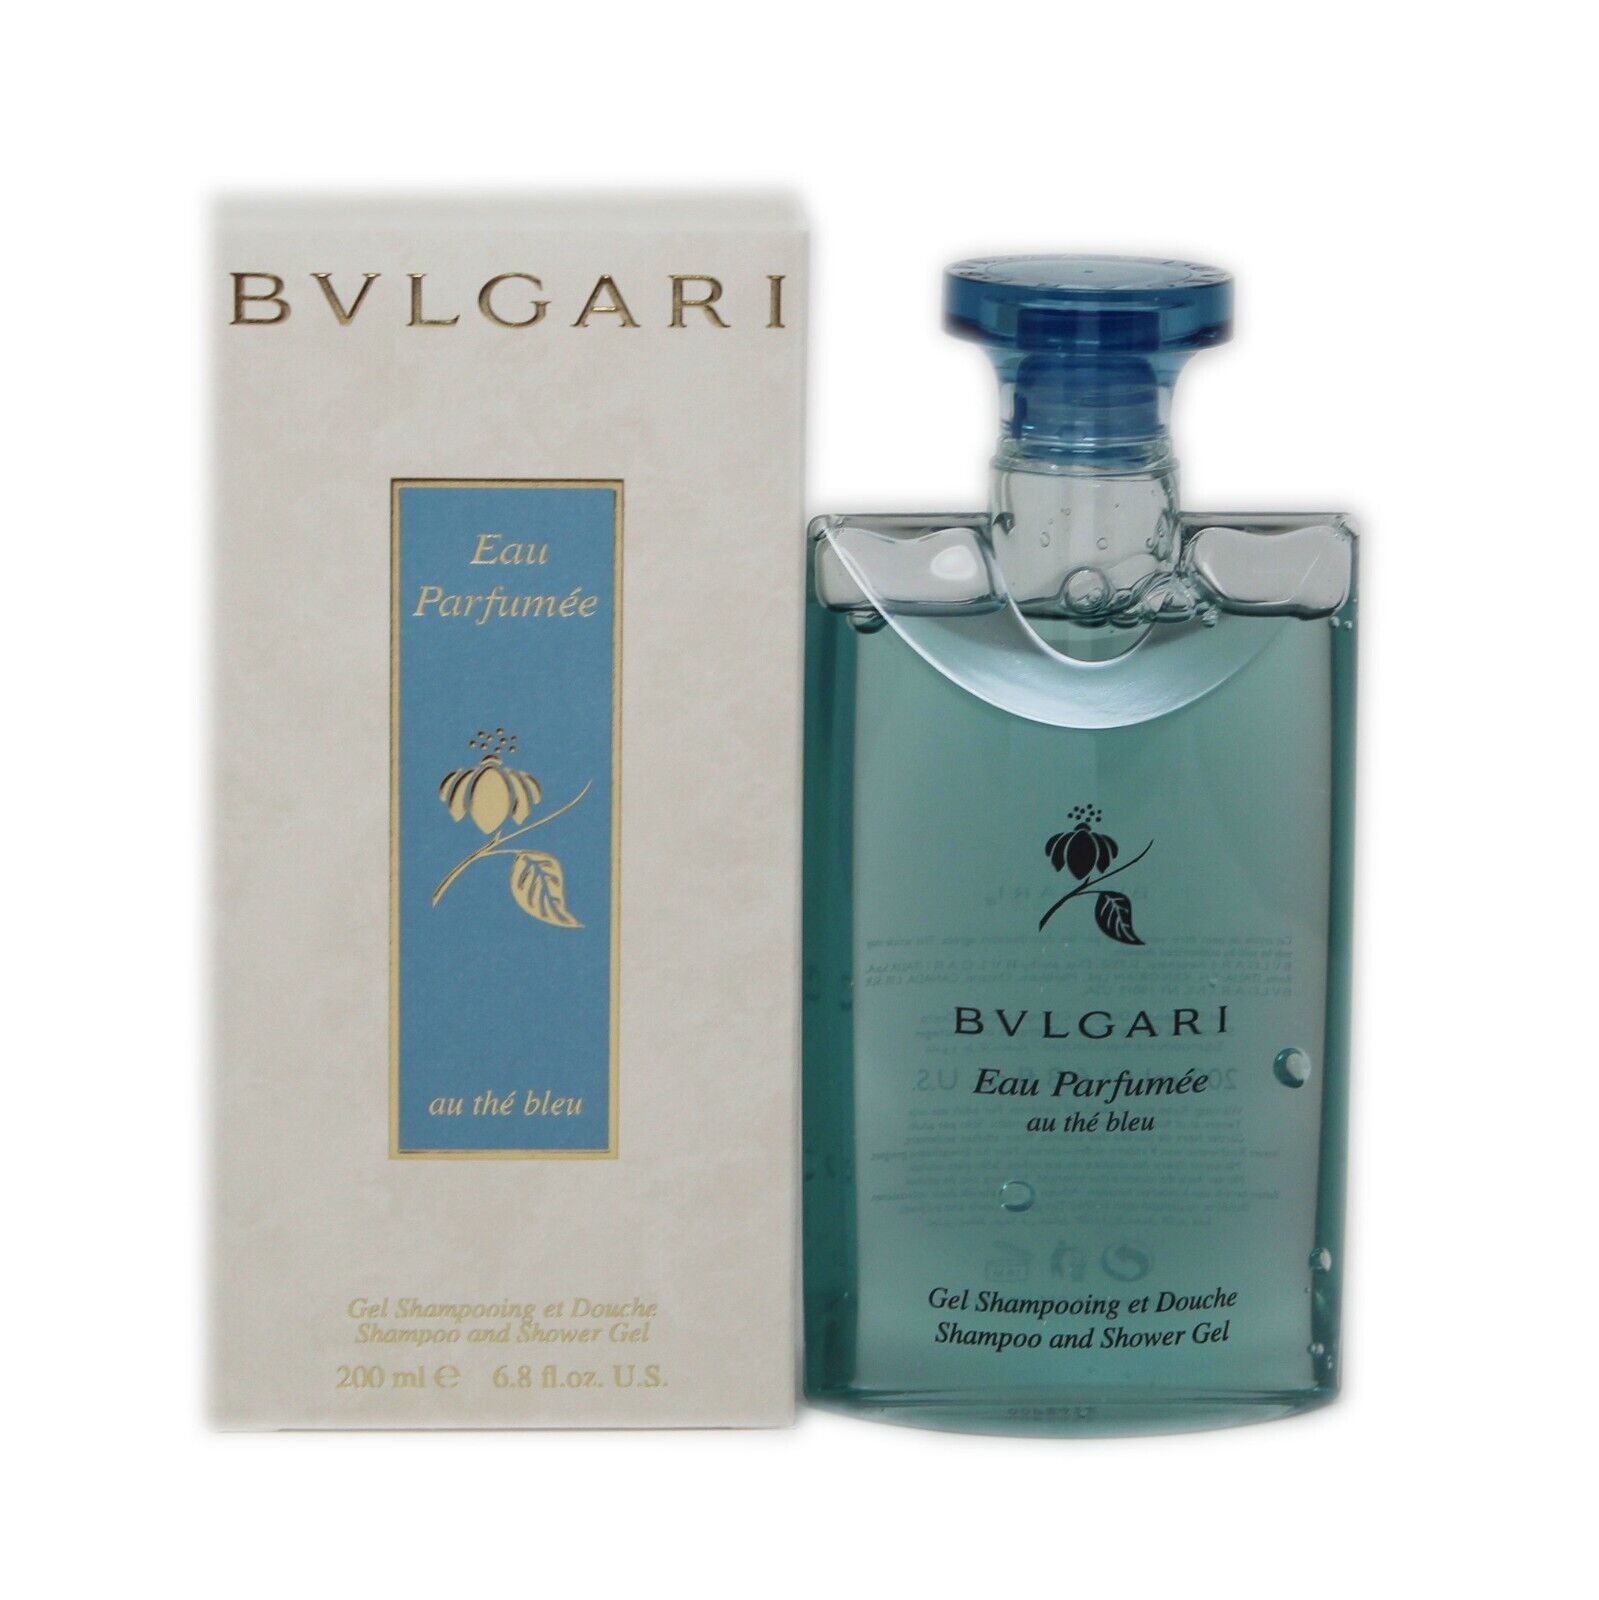 Bvlgari Eau Parfumee au The Bleu - Hair & Body Shampoo